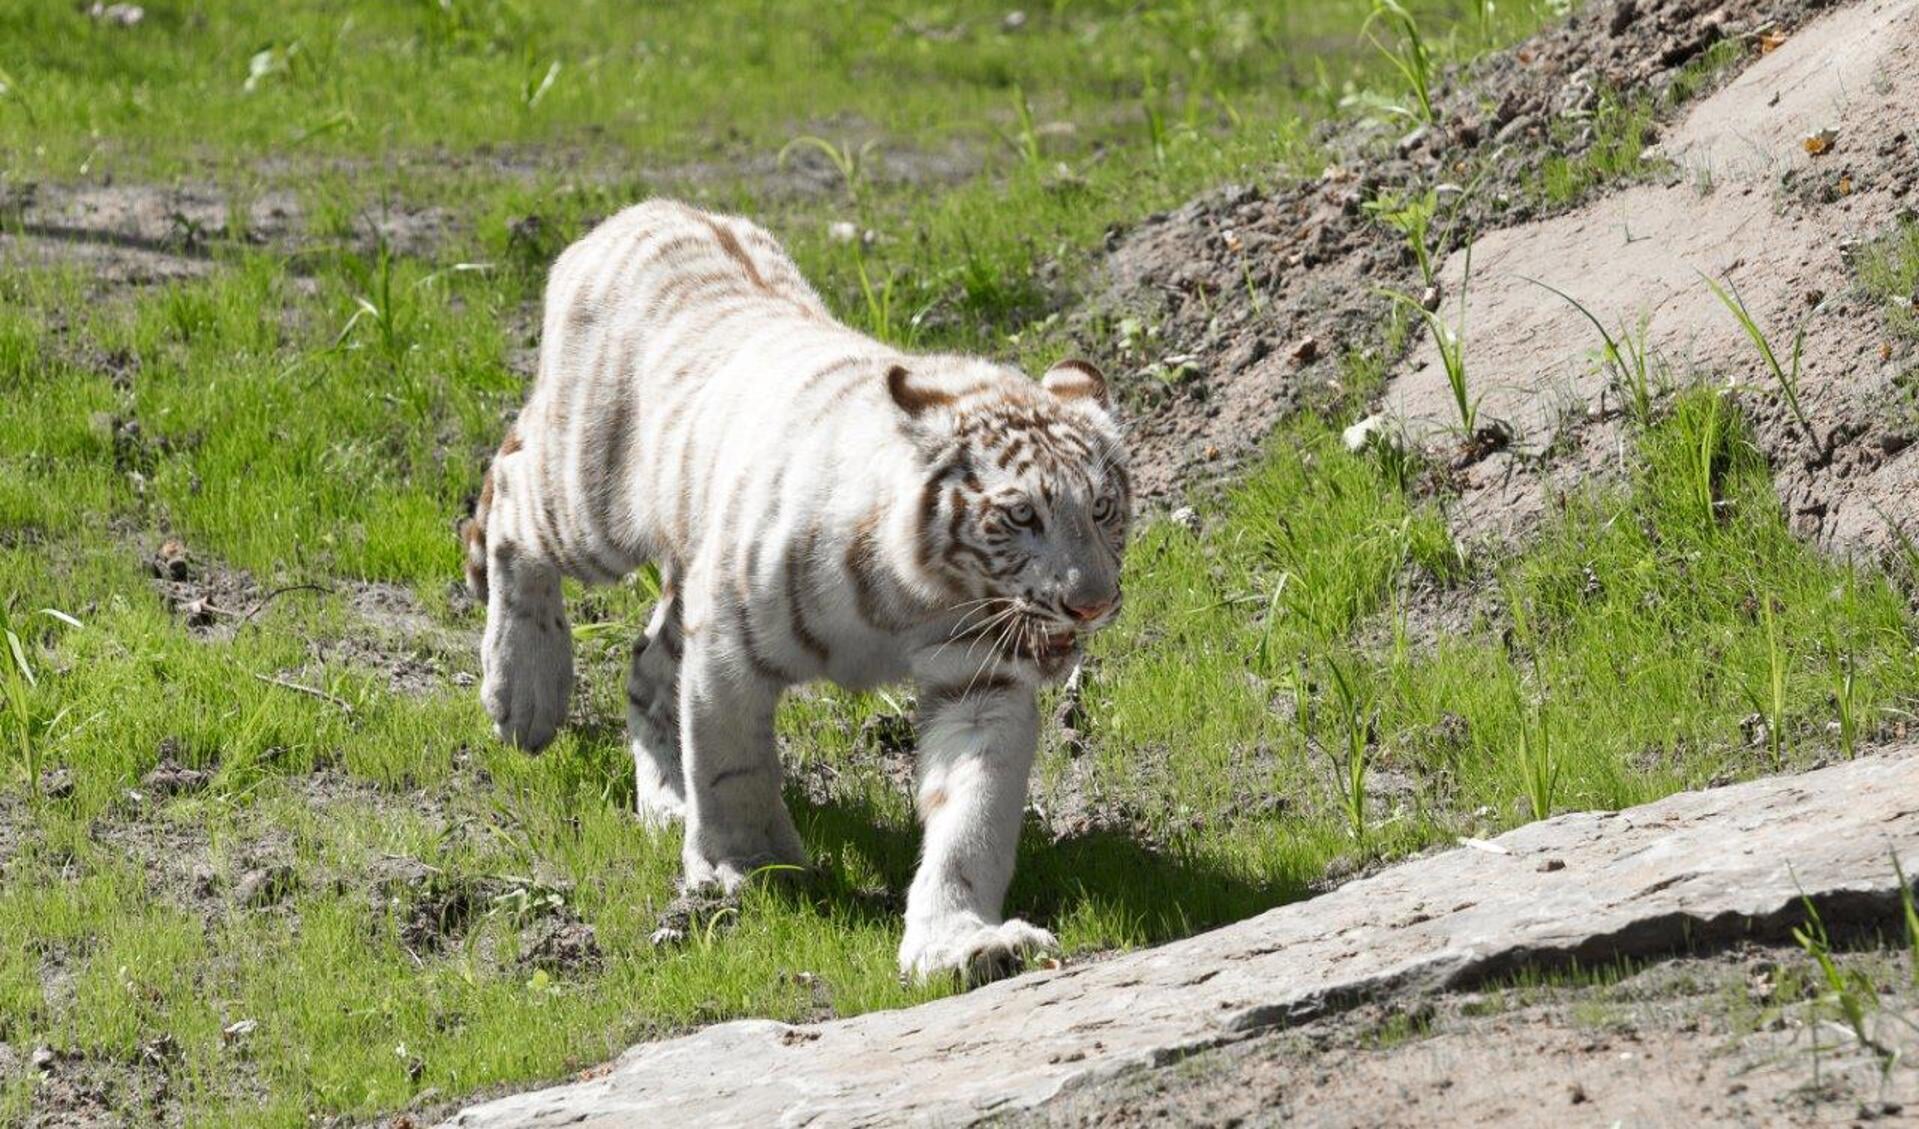 Witte tijgers van het zooparc.